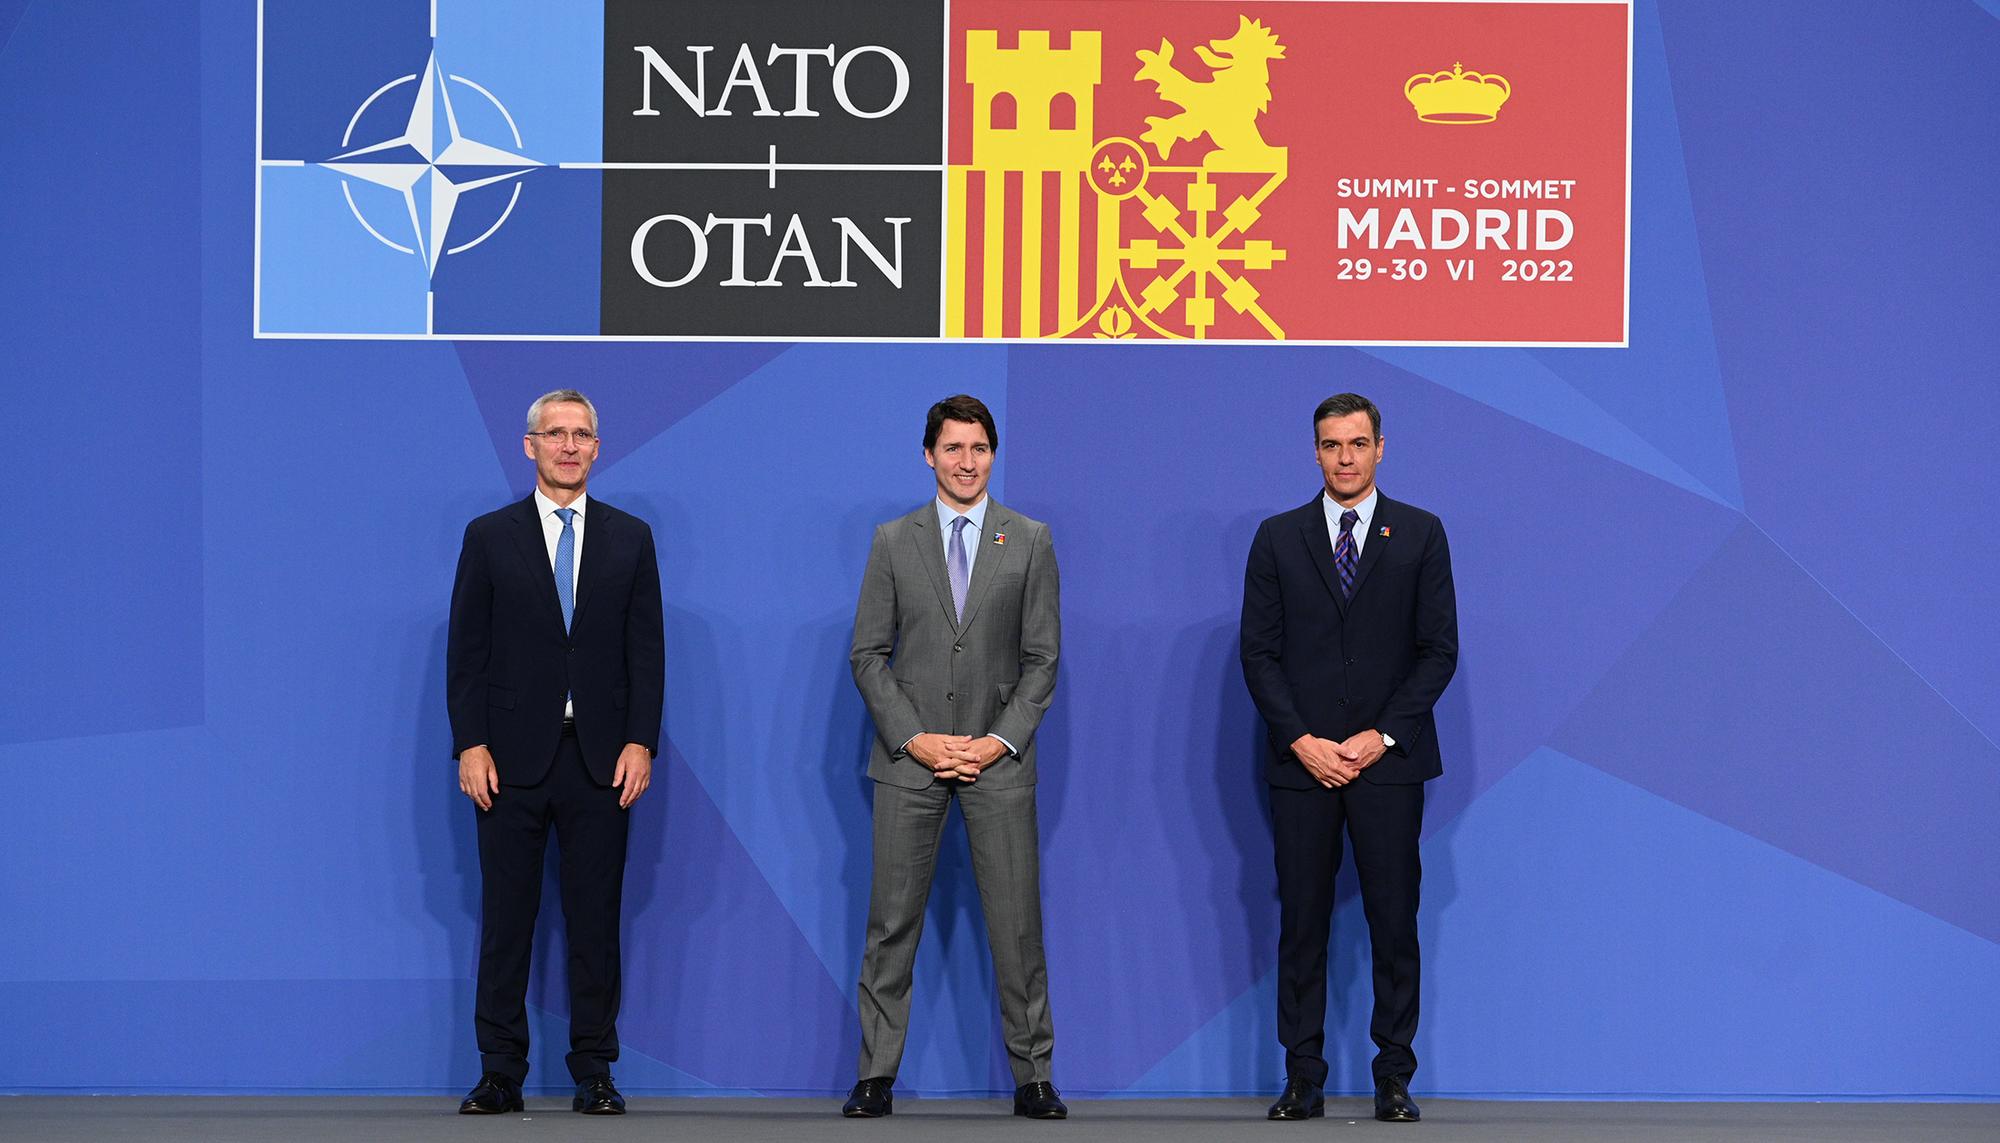 Cumbre de la OTAN Madrid 2022 Ifema - 25